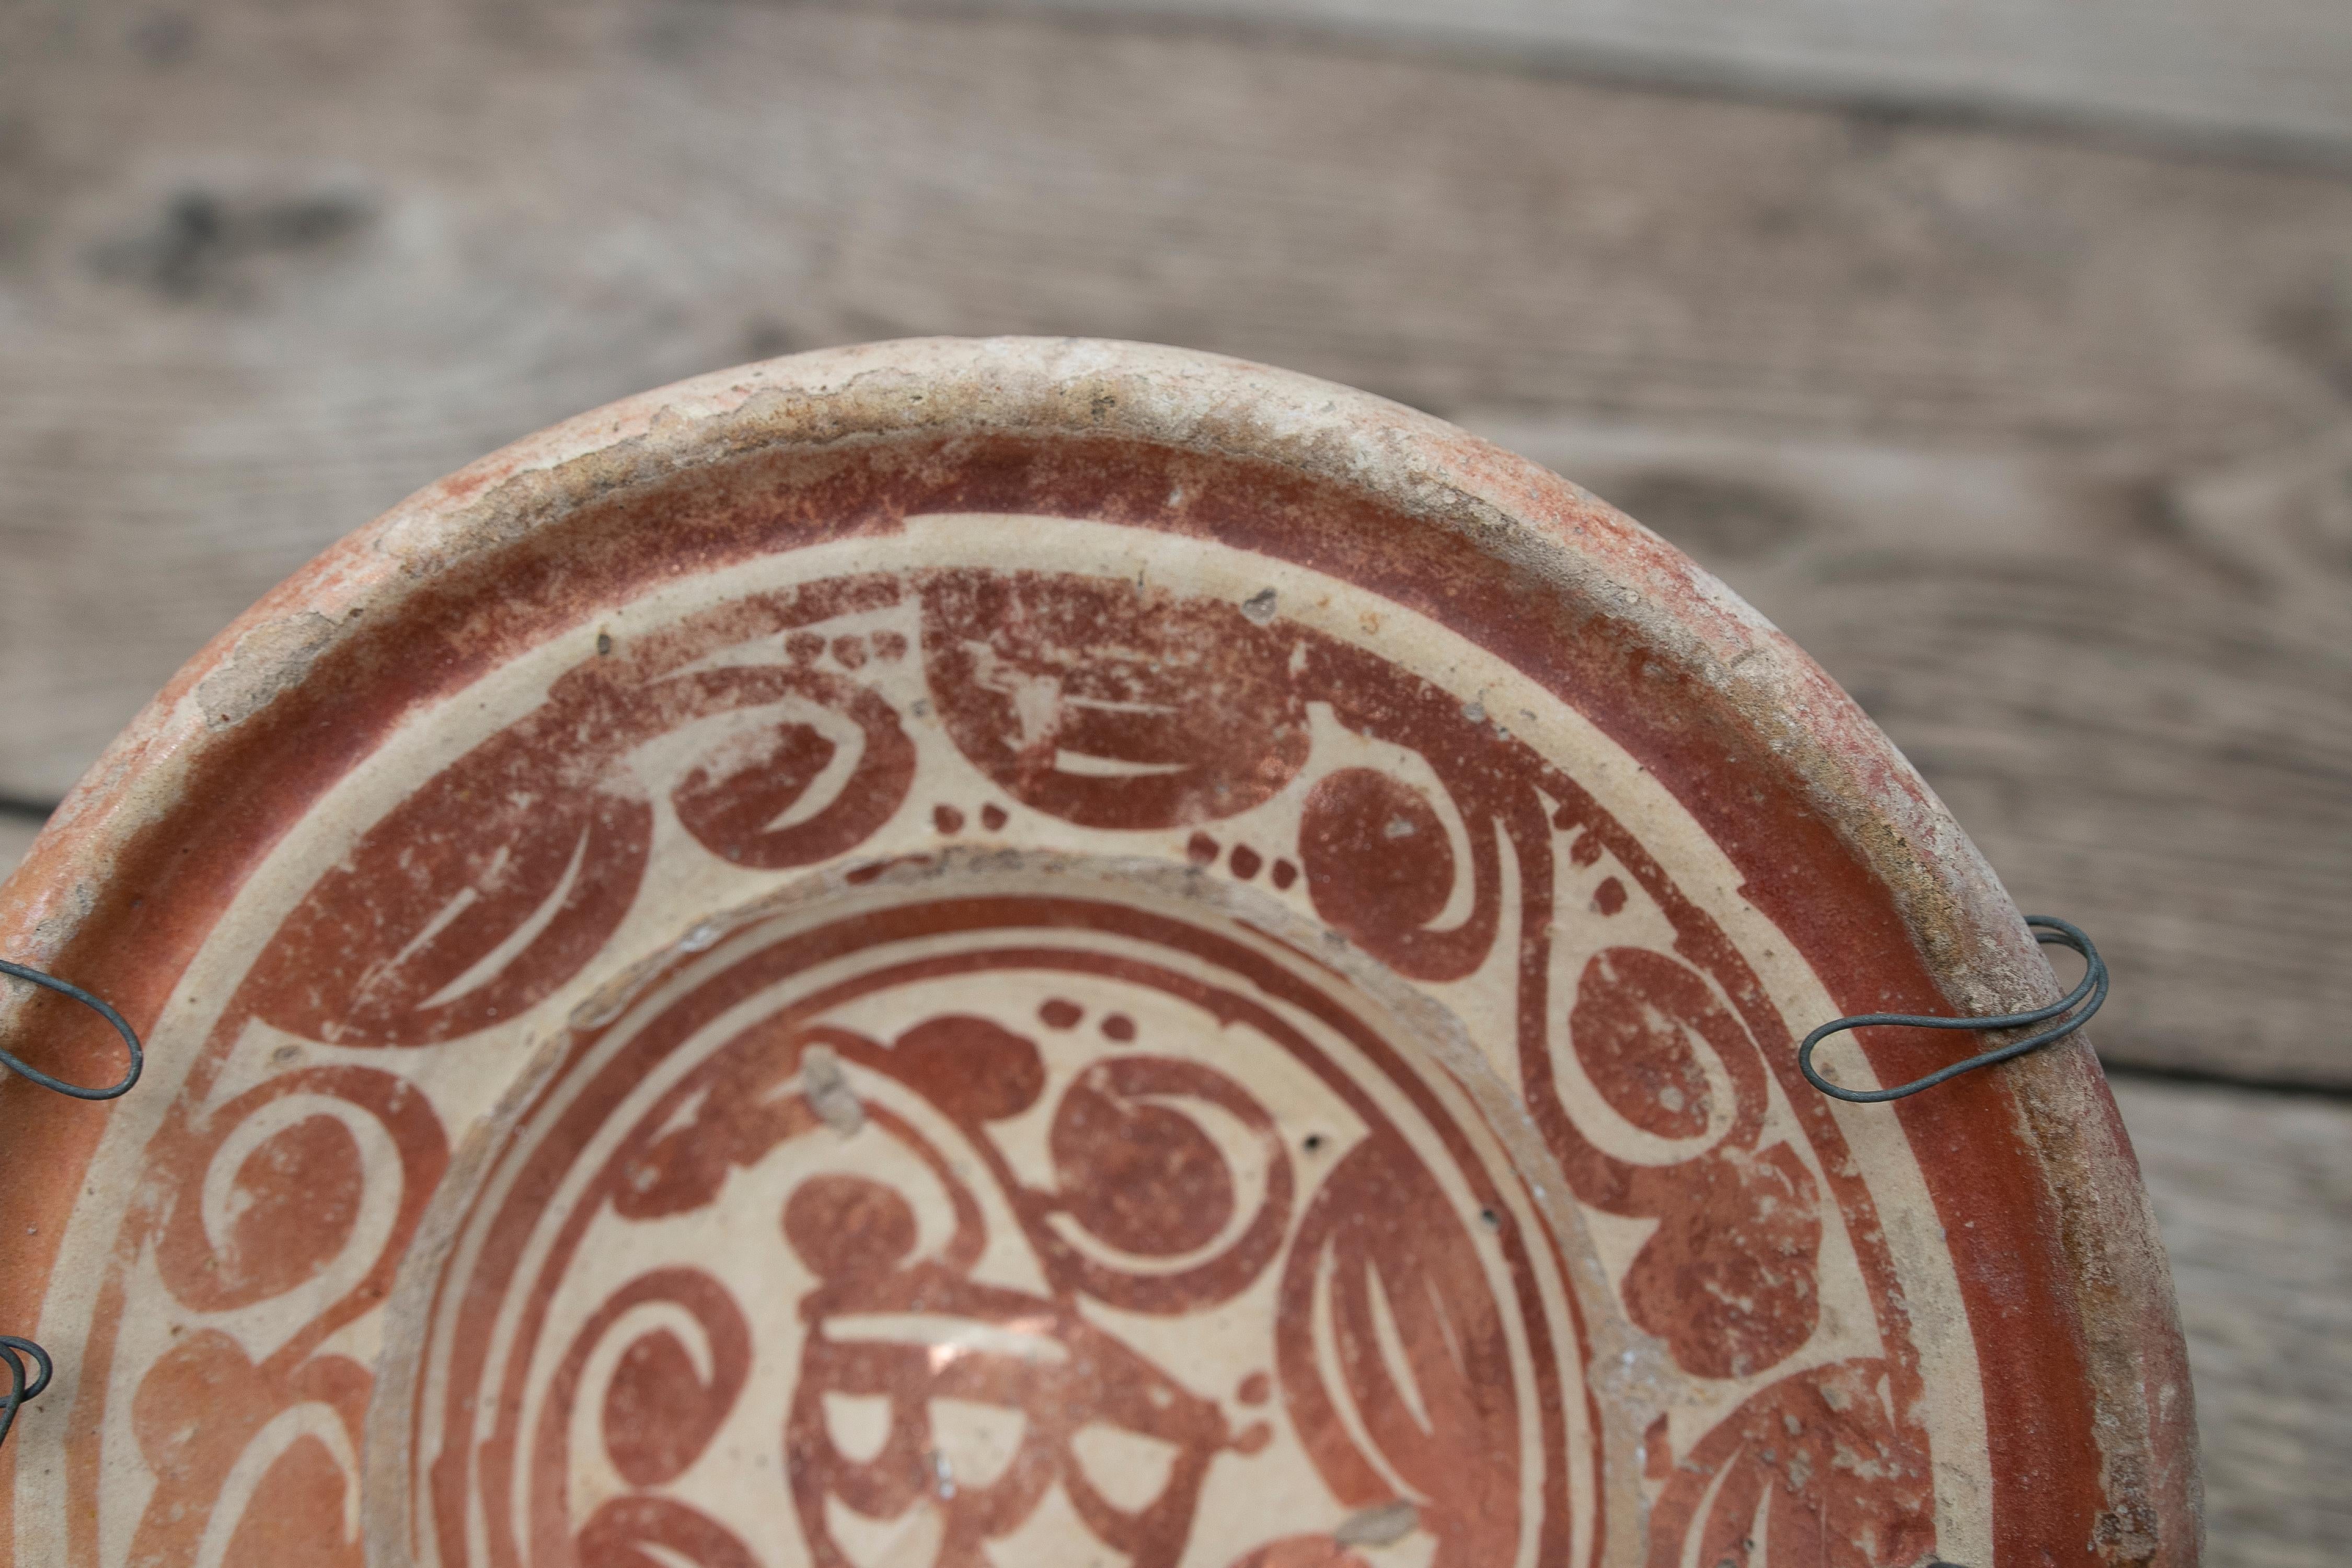 Geschmolzene Keramik mit Metalldekor
Es handelt sich um eine 